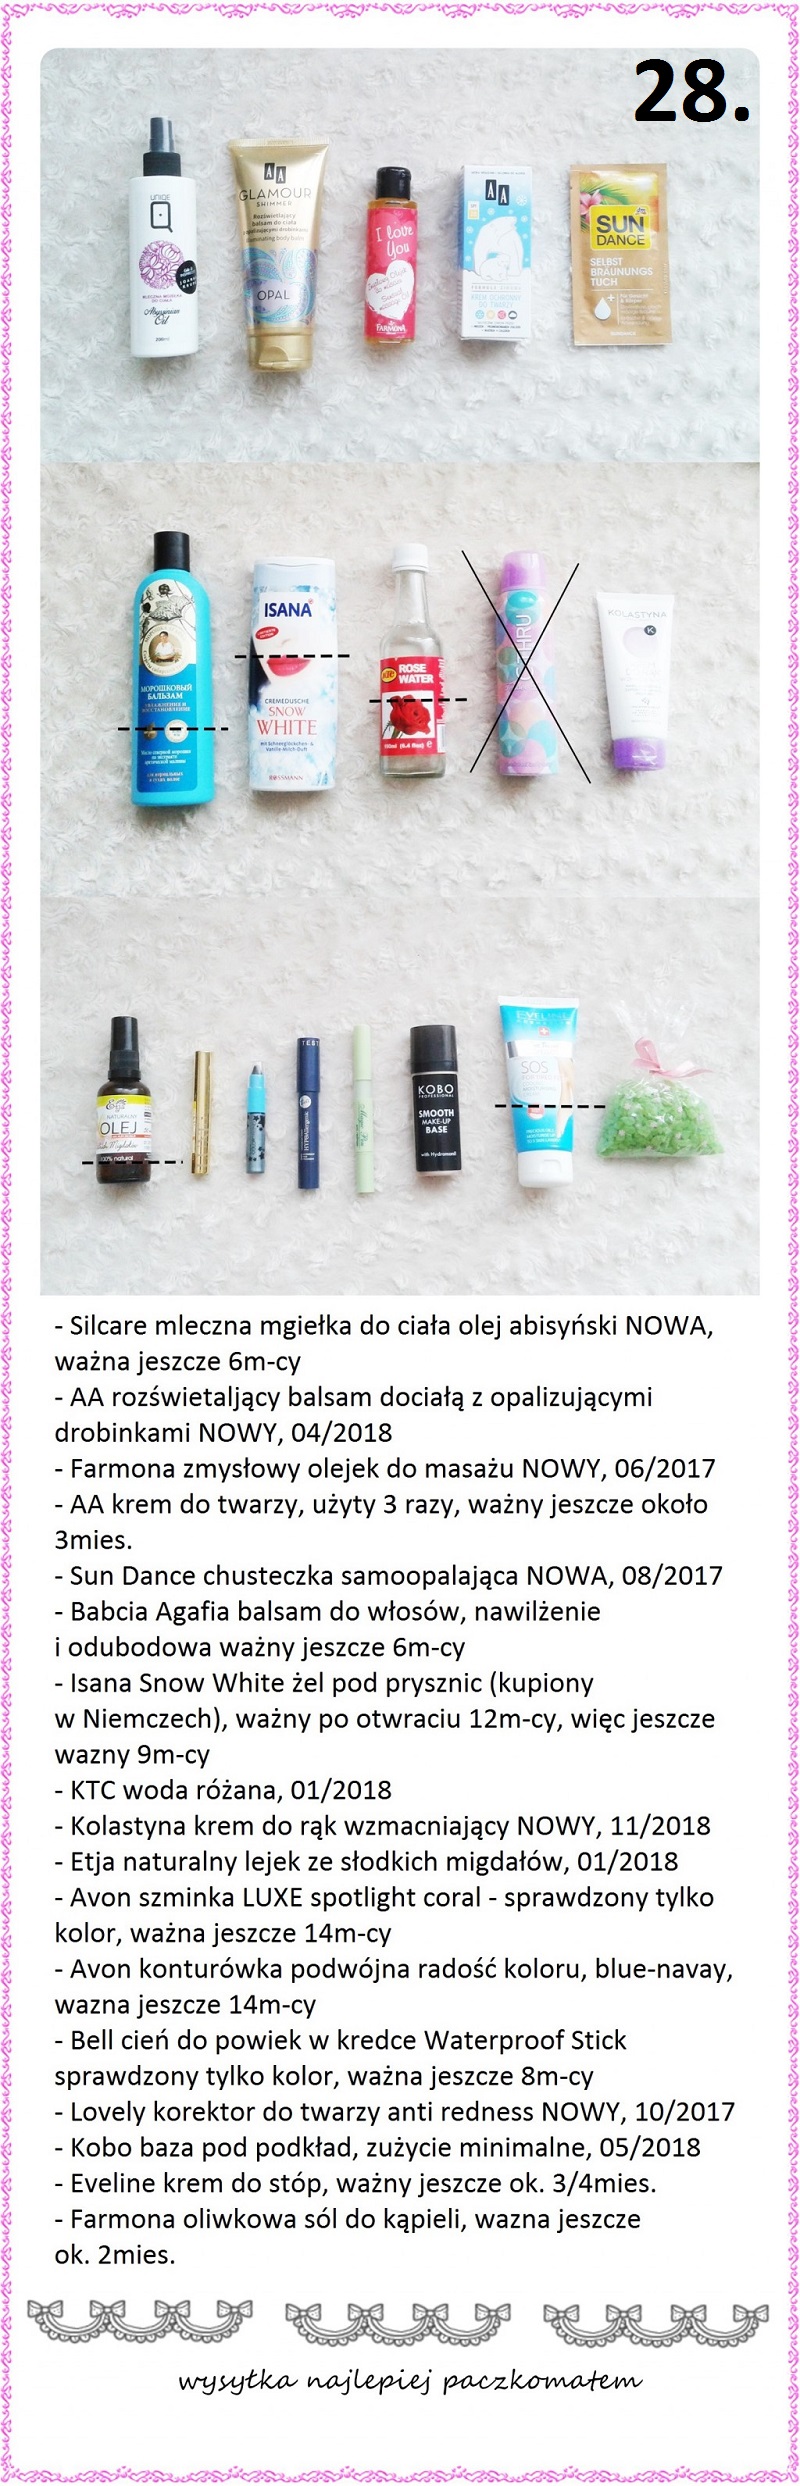 Wymiana kosmetyczna nr 2/2017